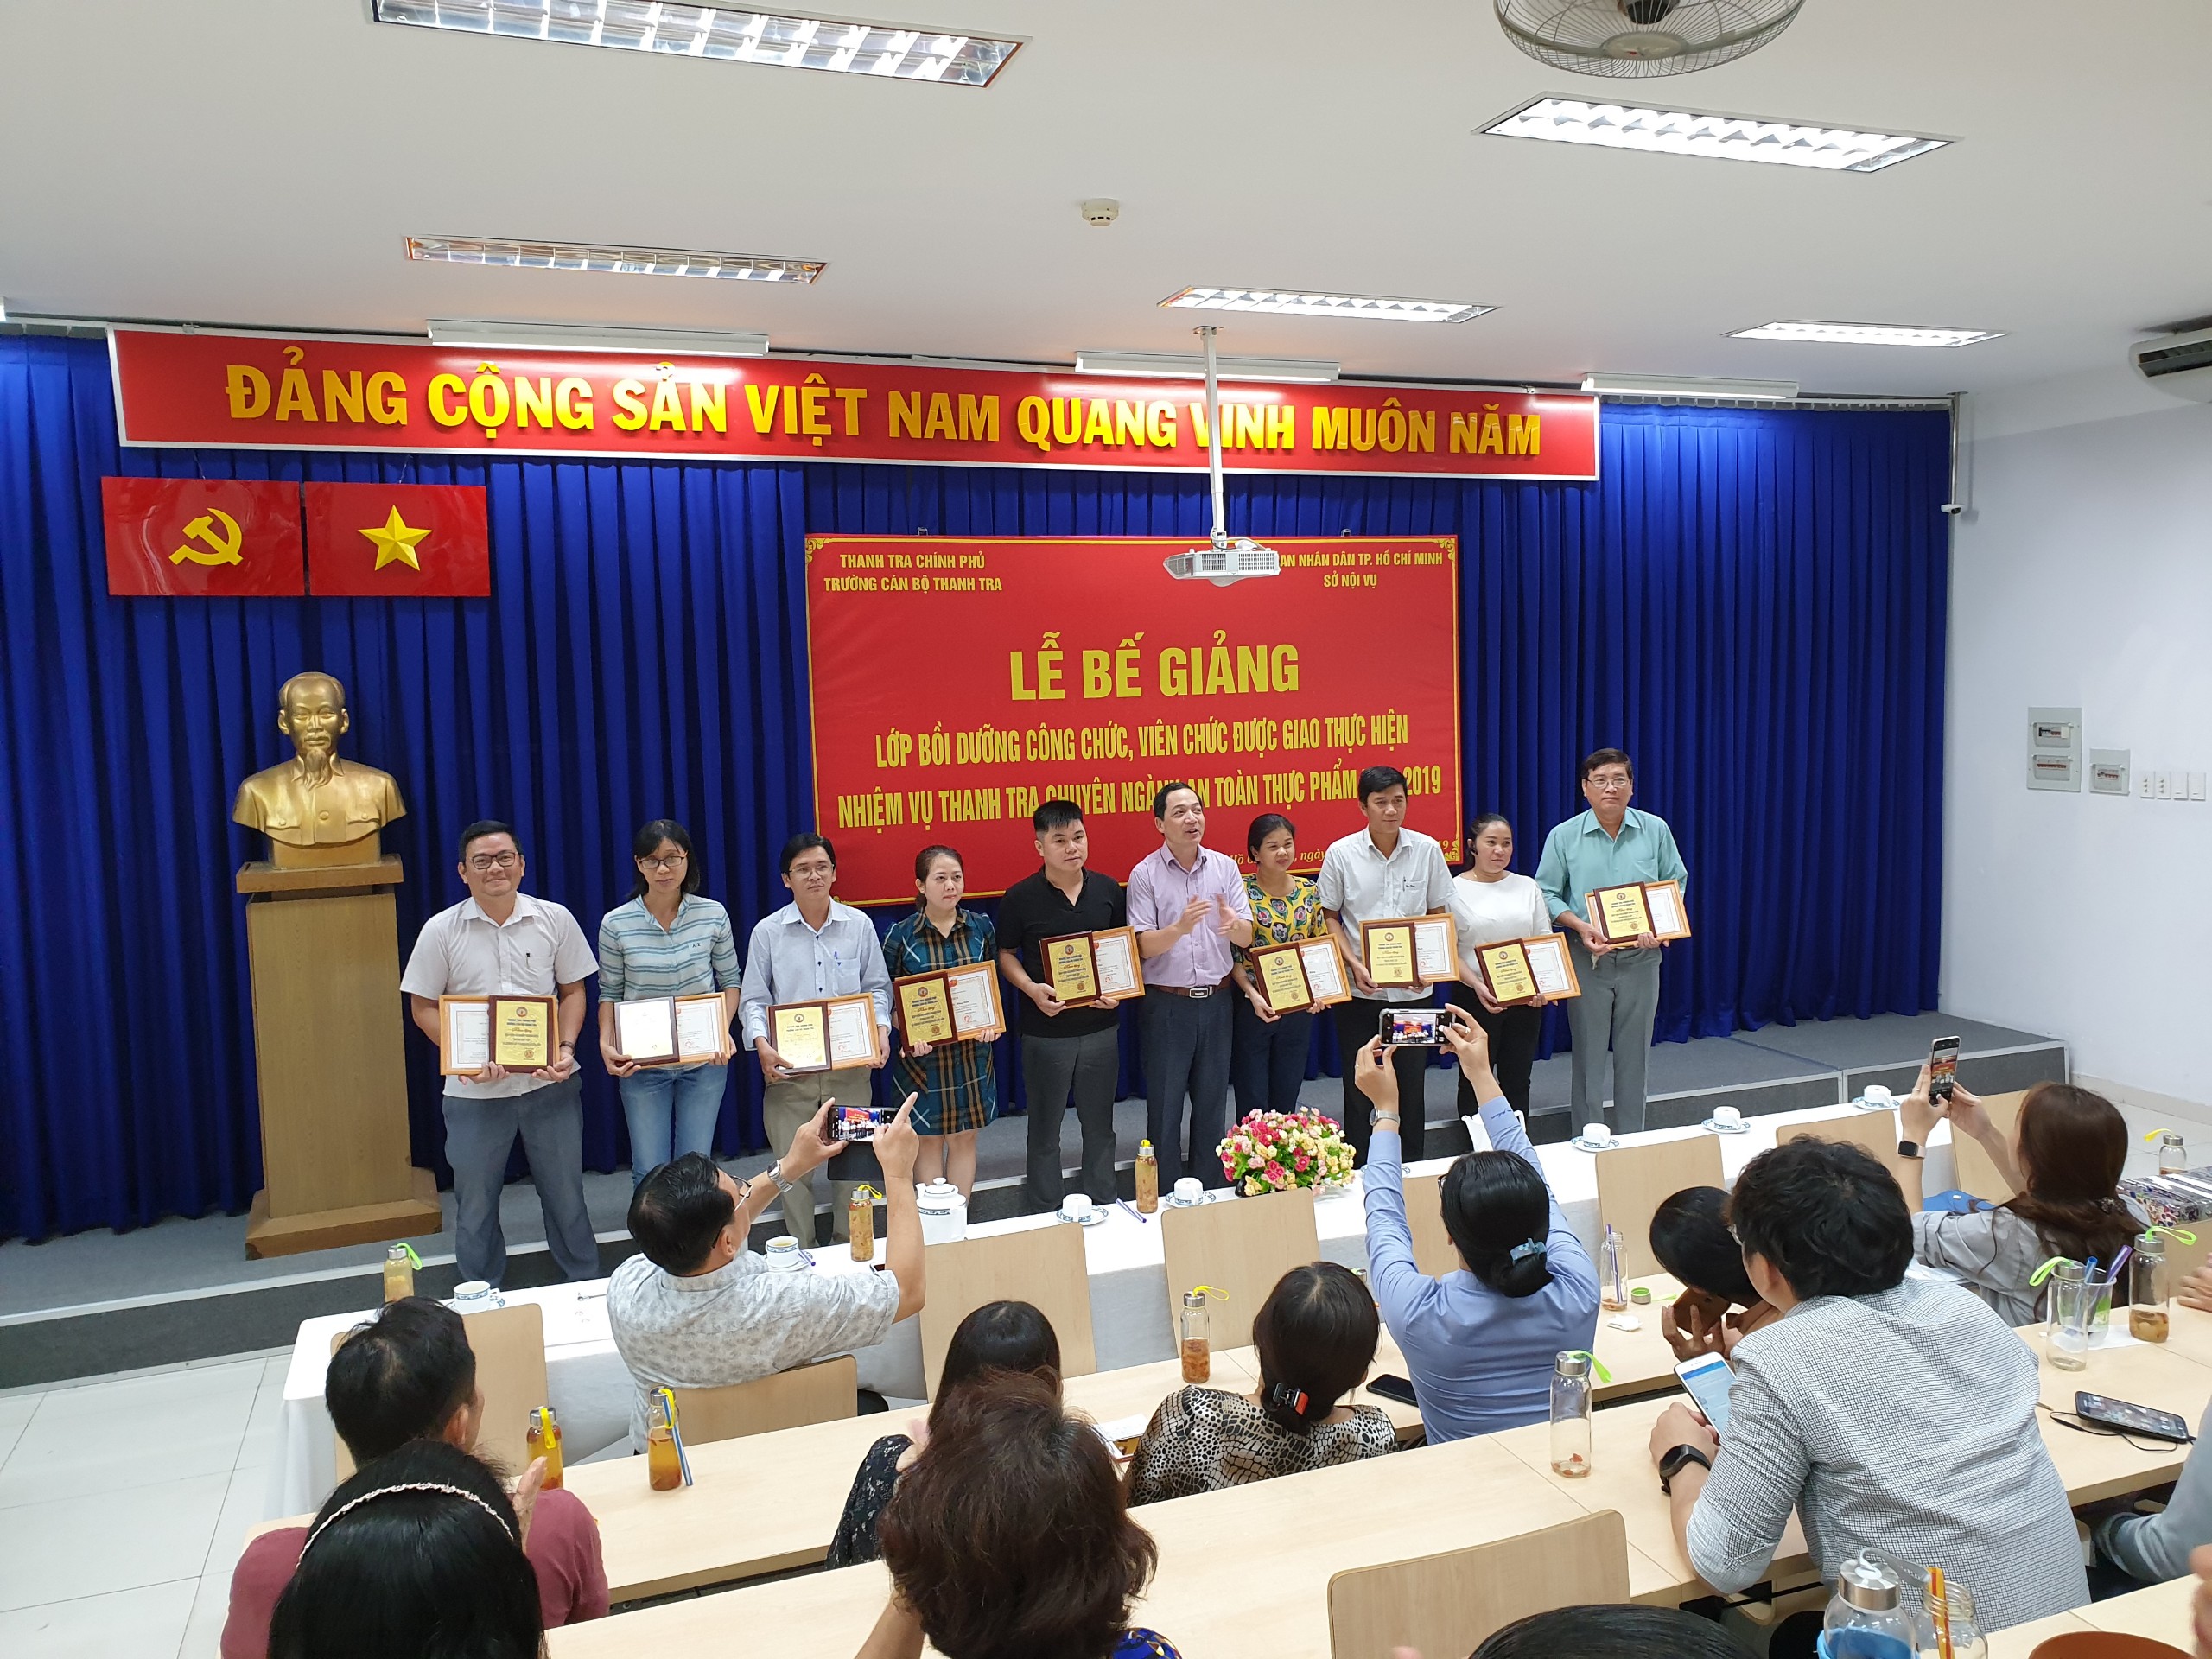 TS Nguyễn Huy Hoàng Phó Hiệu trưởng nhà trường trao chứng chỉ cho học viên